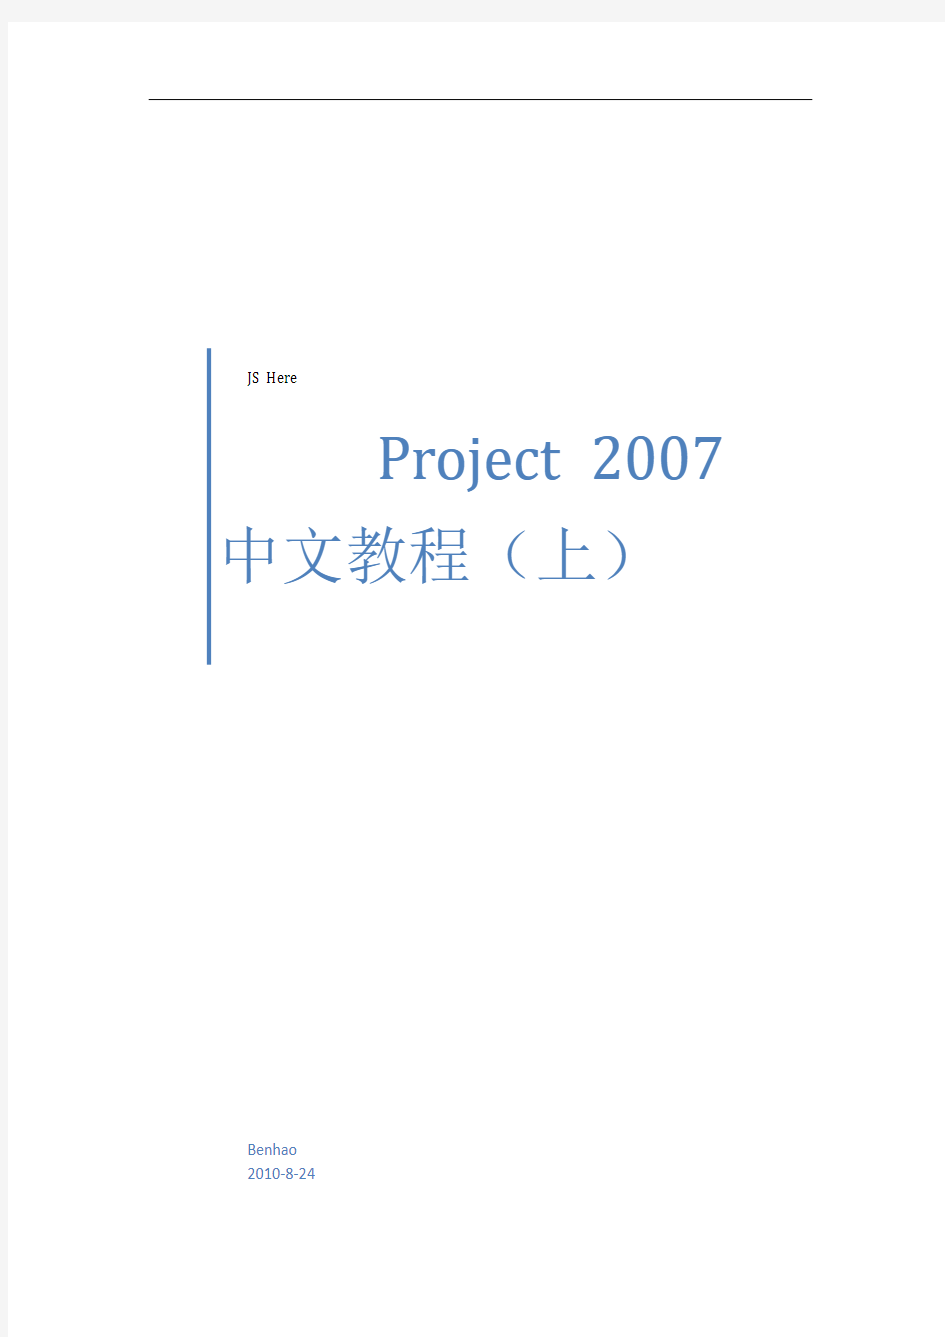 微软项目管理软件Project_2007中文教程(上)